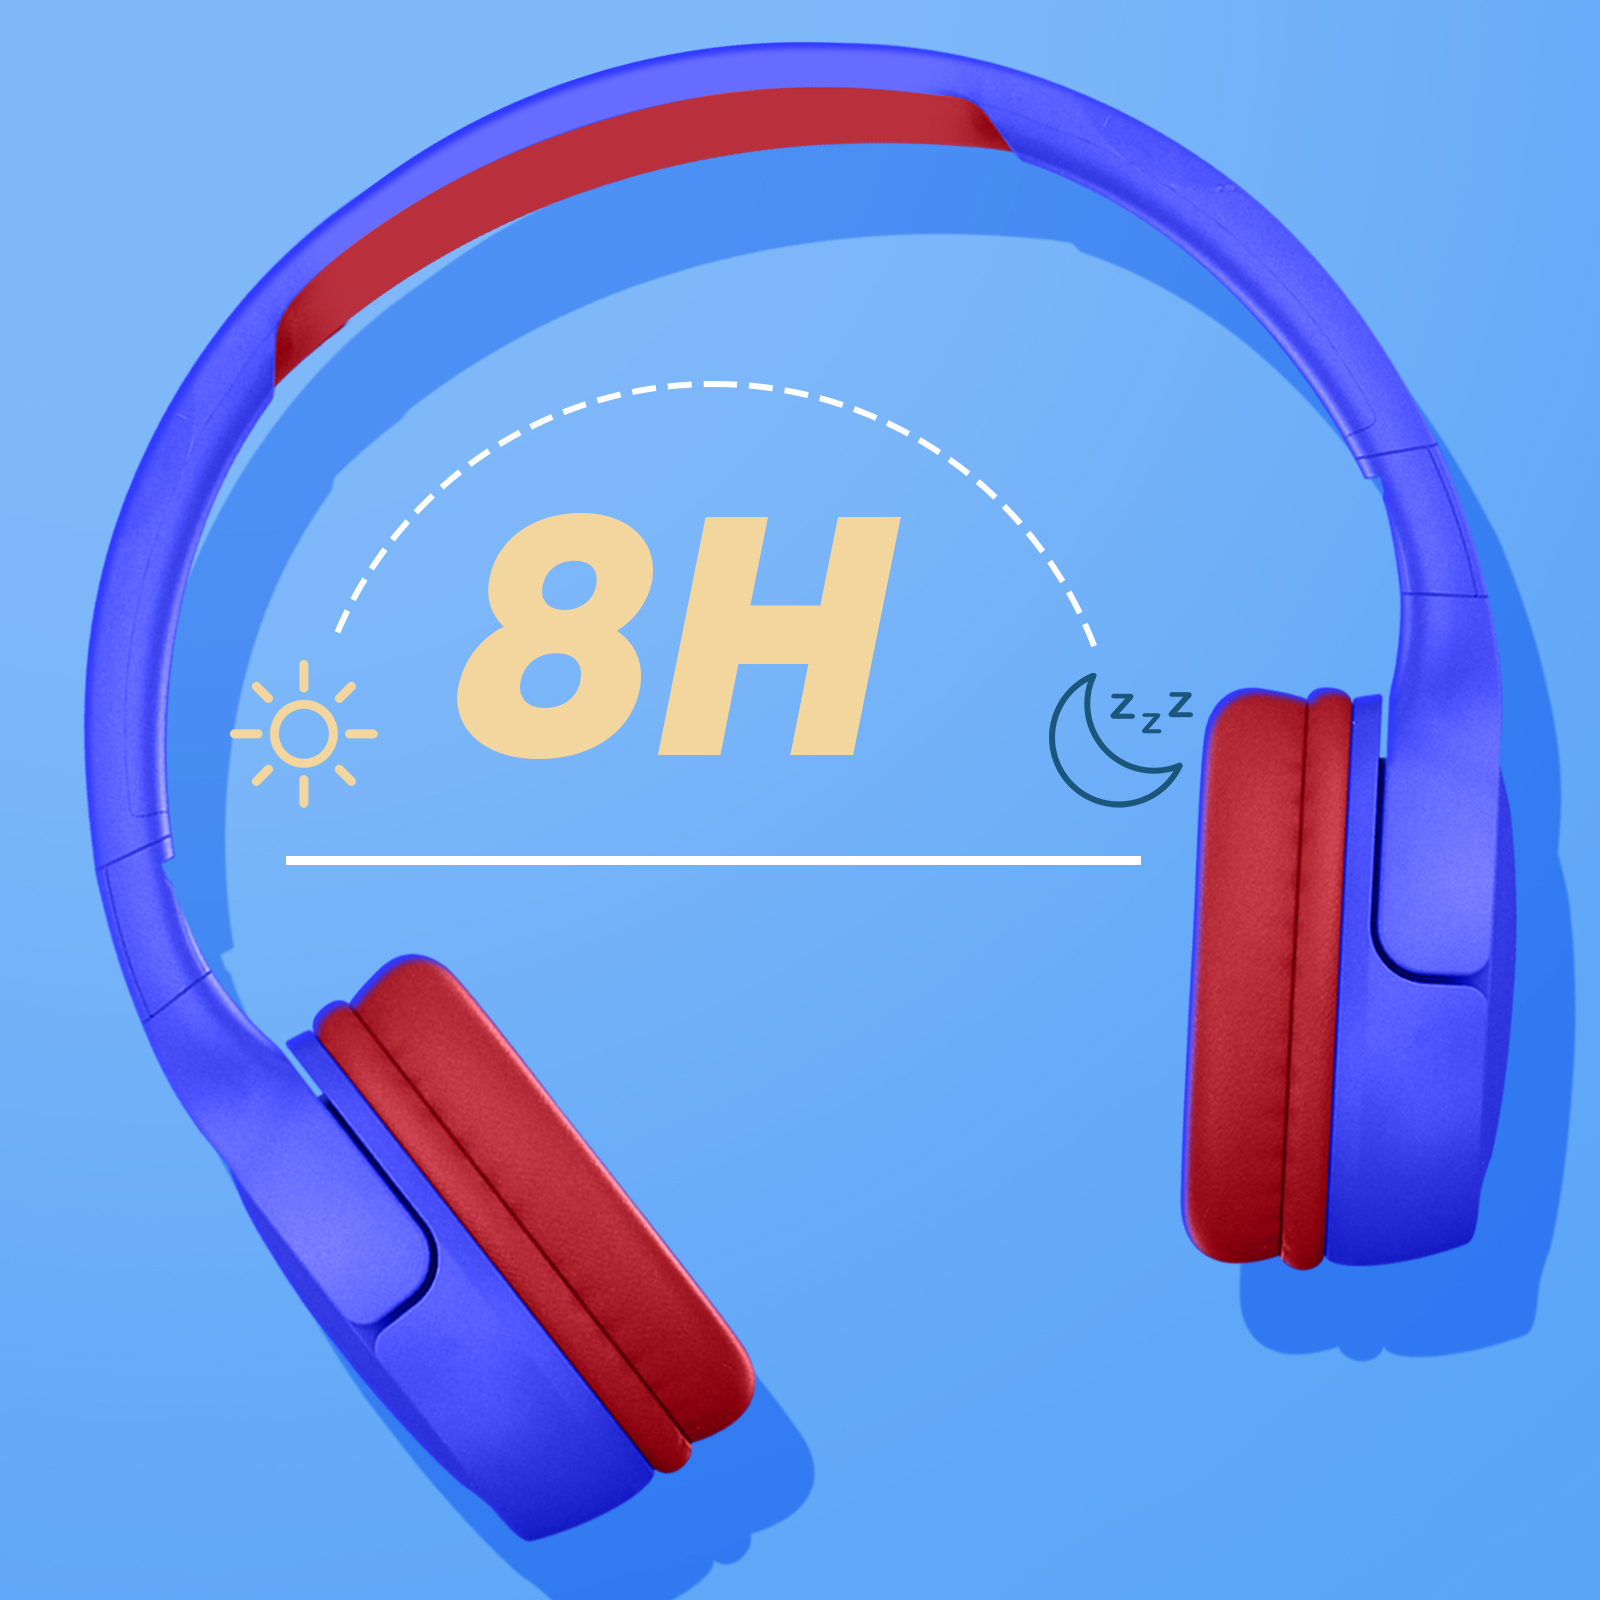 Casque Bluetooth 5.1 pour Enfant avec Micro, Autonomie 8h, Akashi